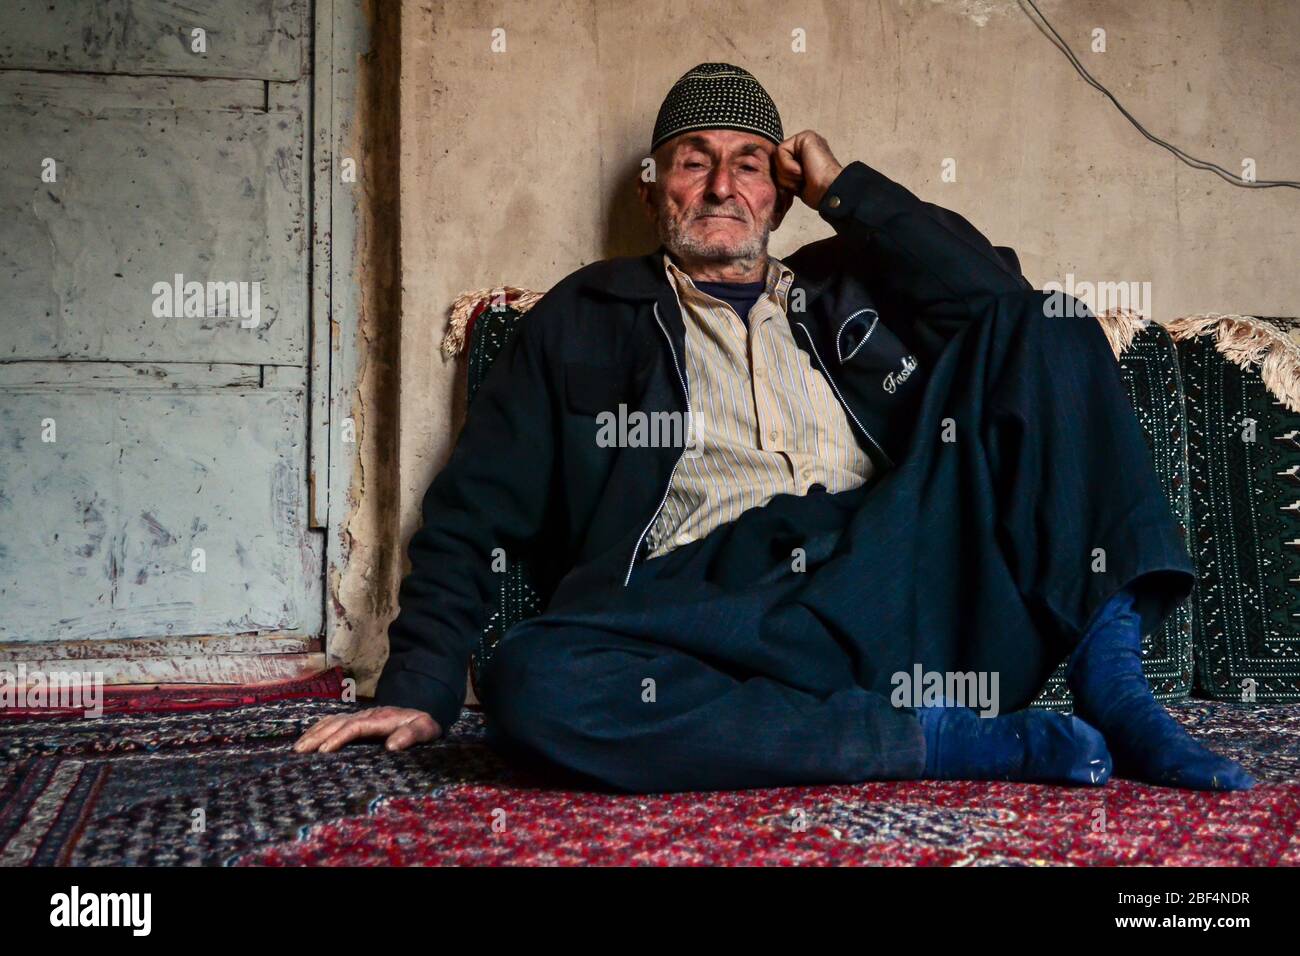 Palangan, iranisches Kurdistan - 15. November 2013: Der alte muslimische iranische Kudische, der auf dem Bodenteppich seines Hauses sitzt, schaut auf die Kamera Stockfoto